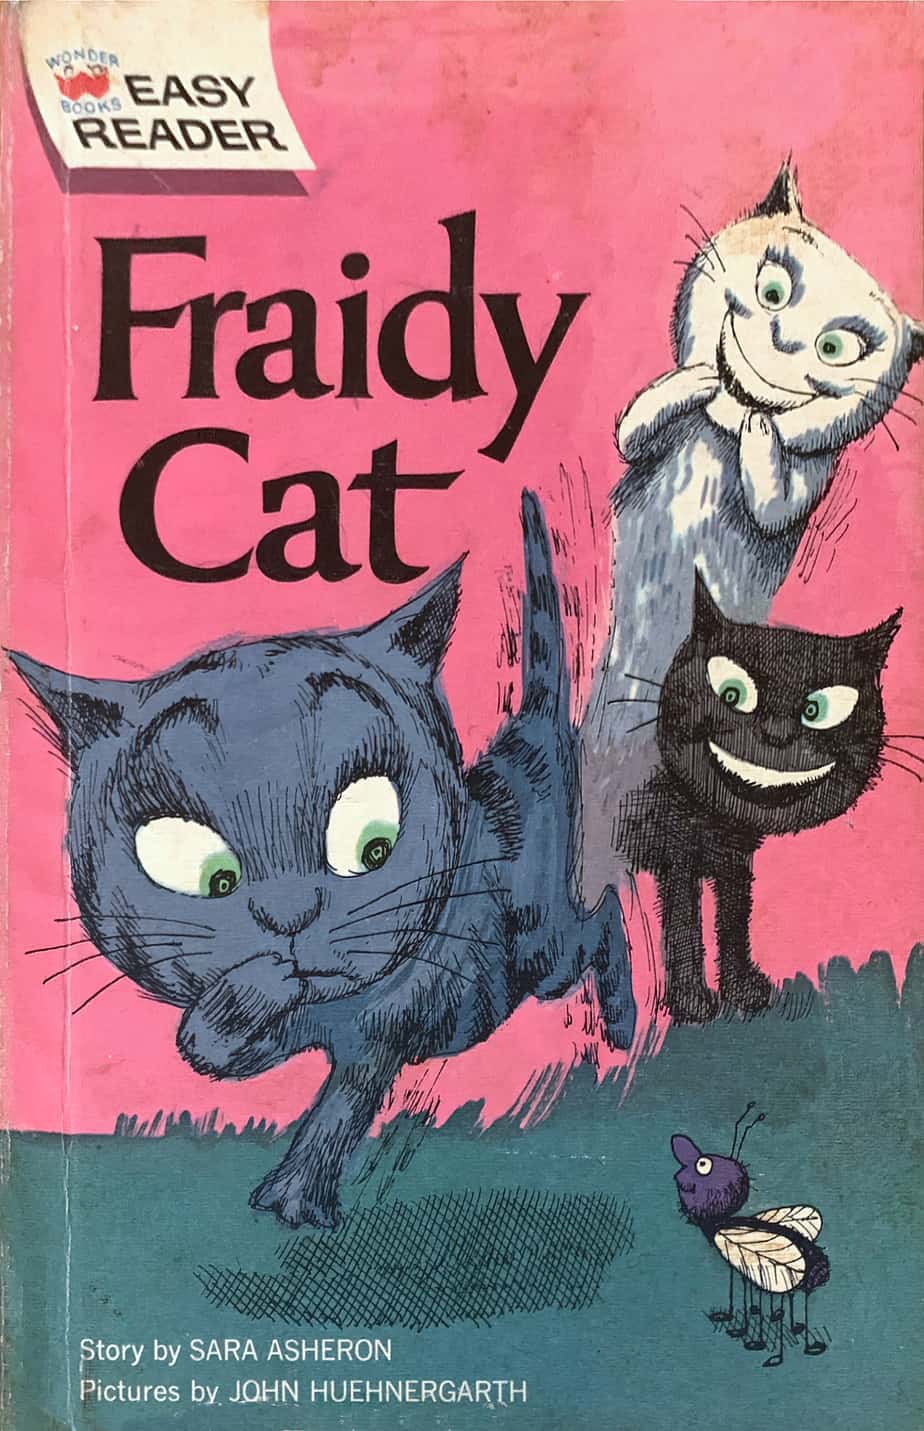 Fraidy Cat by Sara Asheron and John Huehnergarth